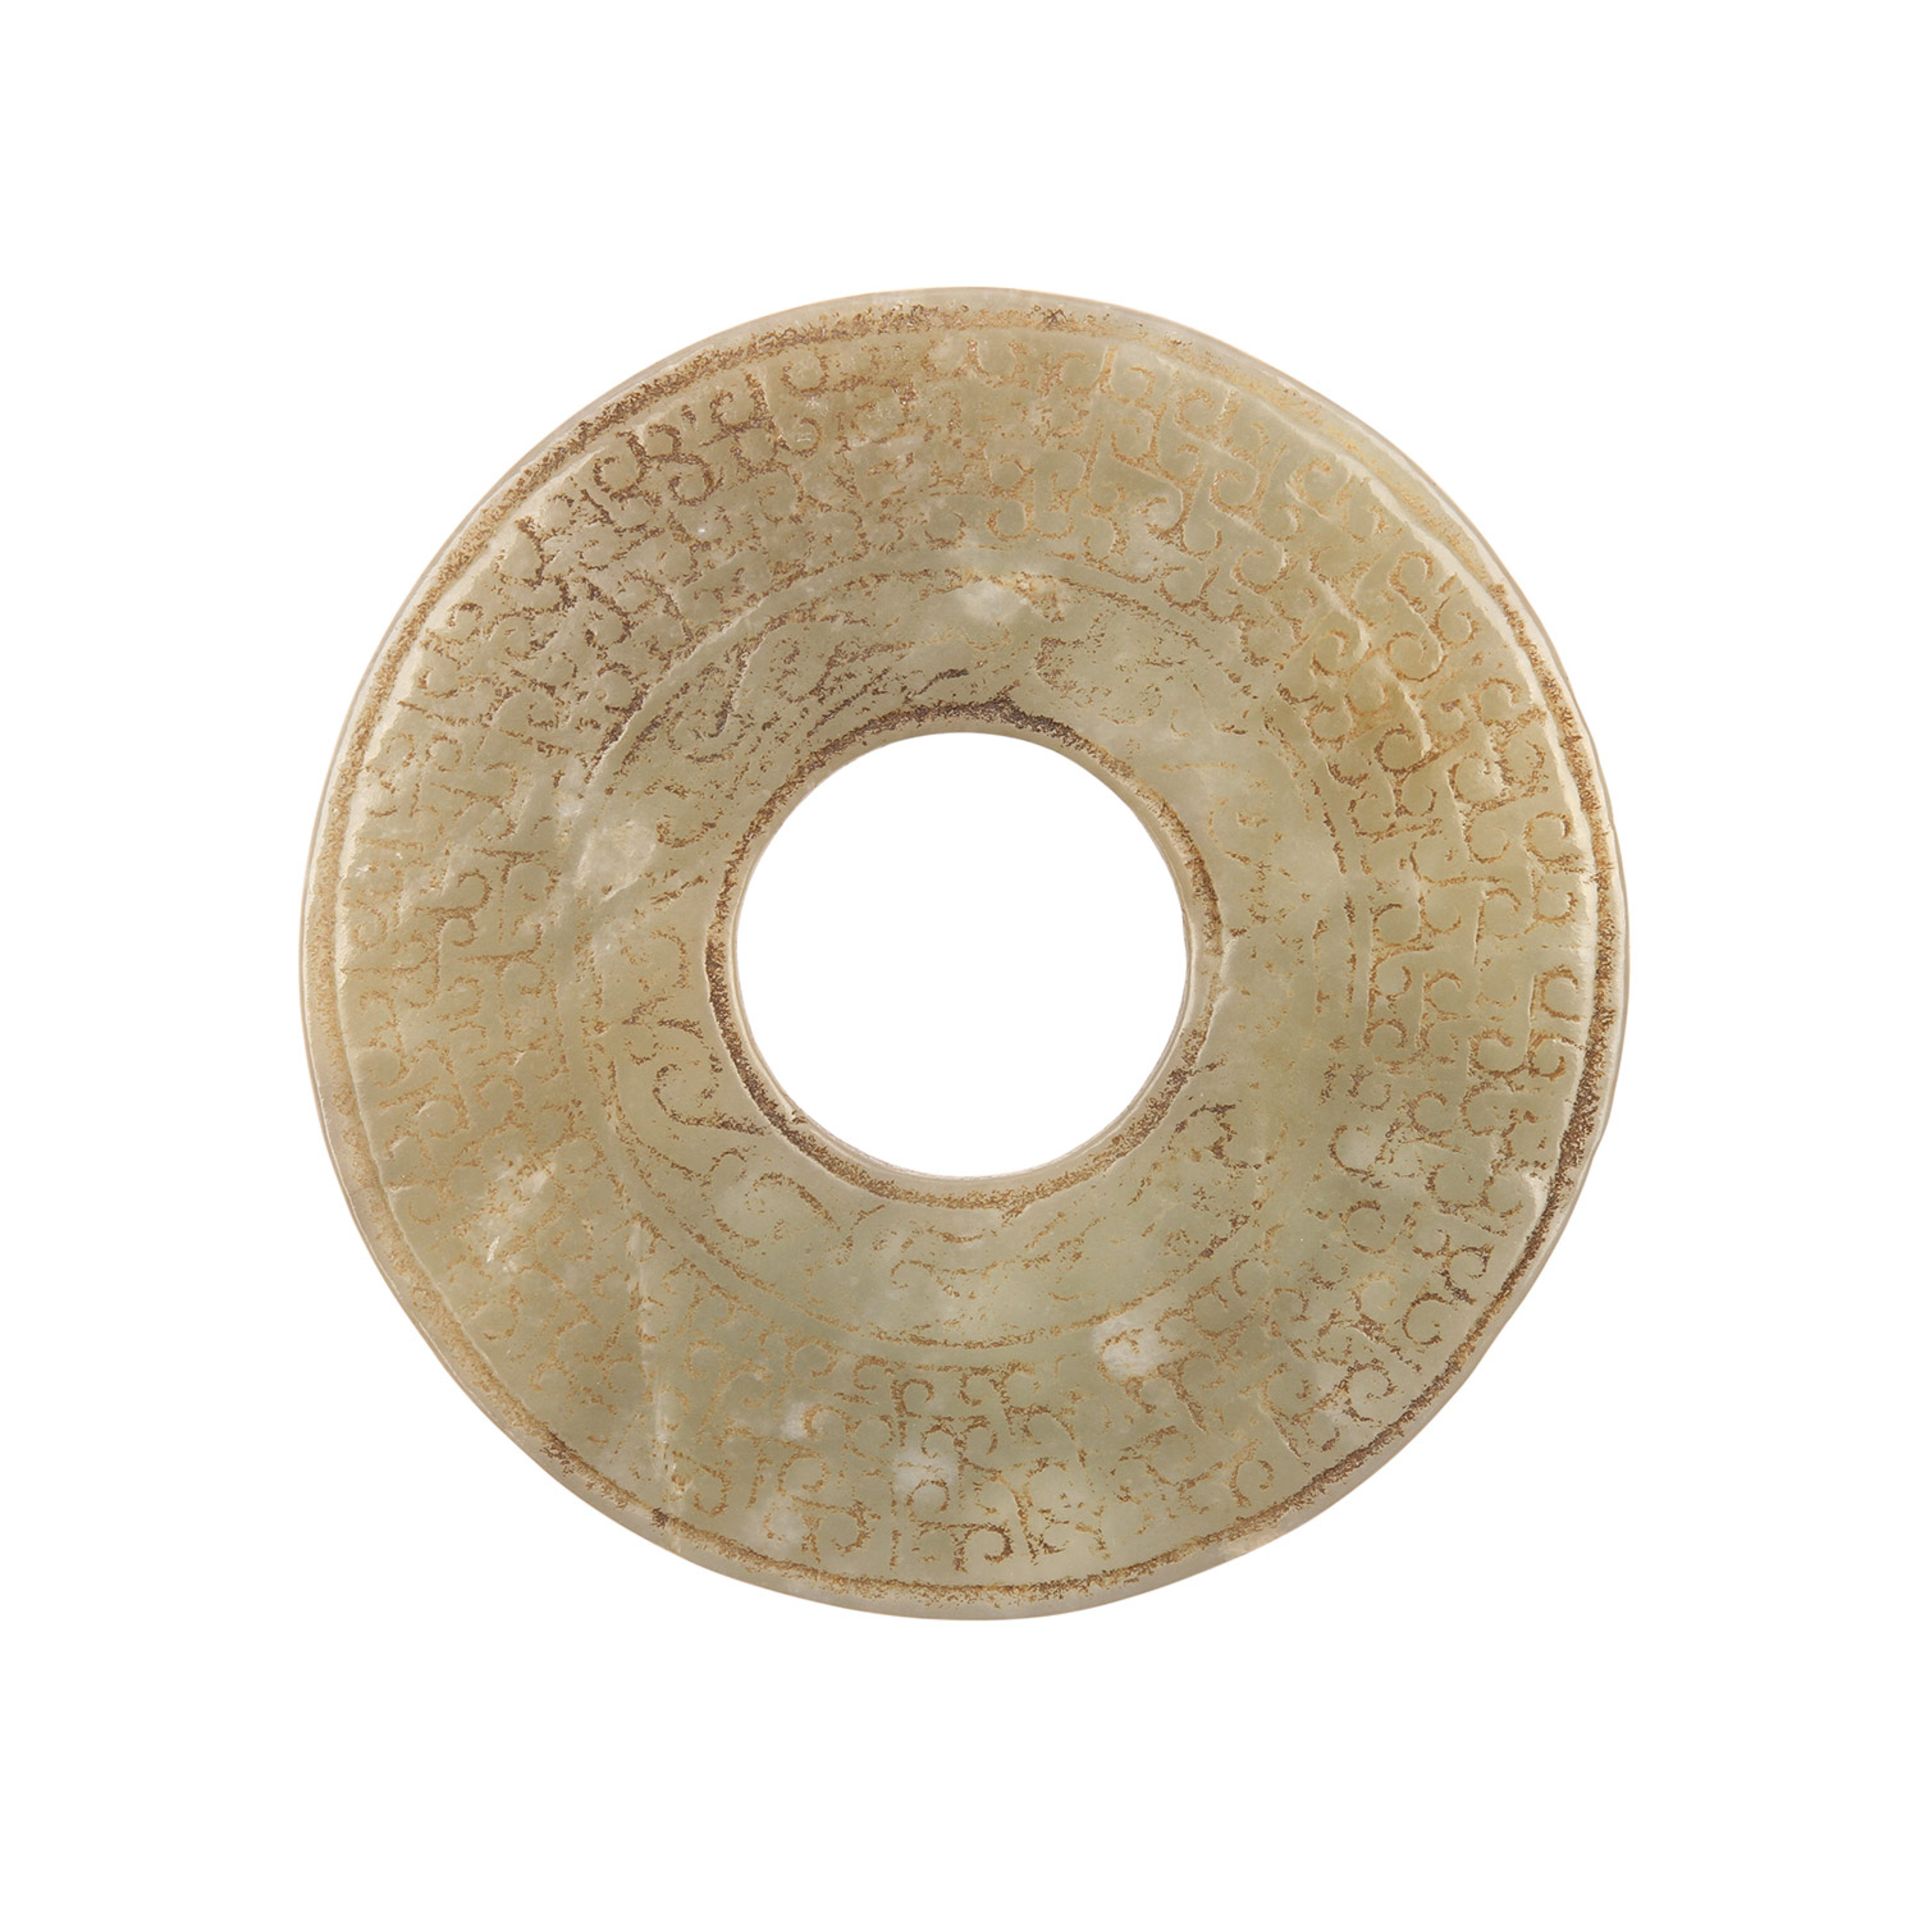 Bi-Scheibe aus Jade. CHINA, wohl Han-Dynastie (206 v.Chr. bis 220 nach Chr.).Beige-grüne Jade,